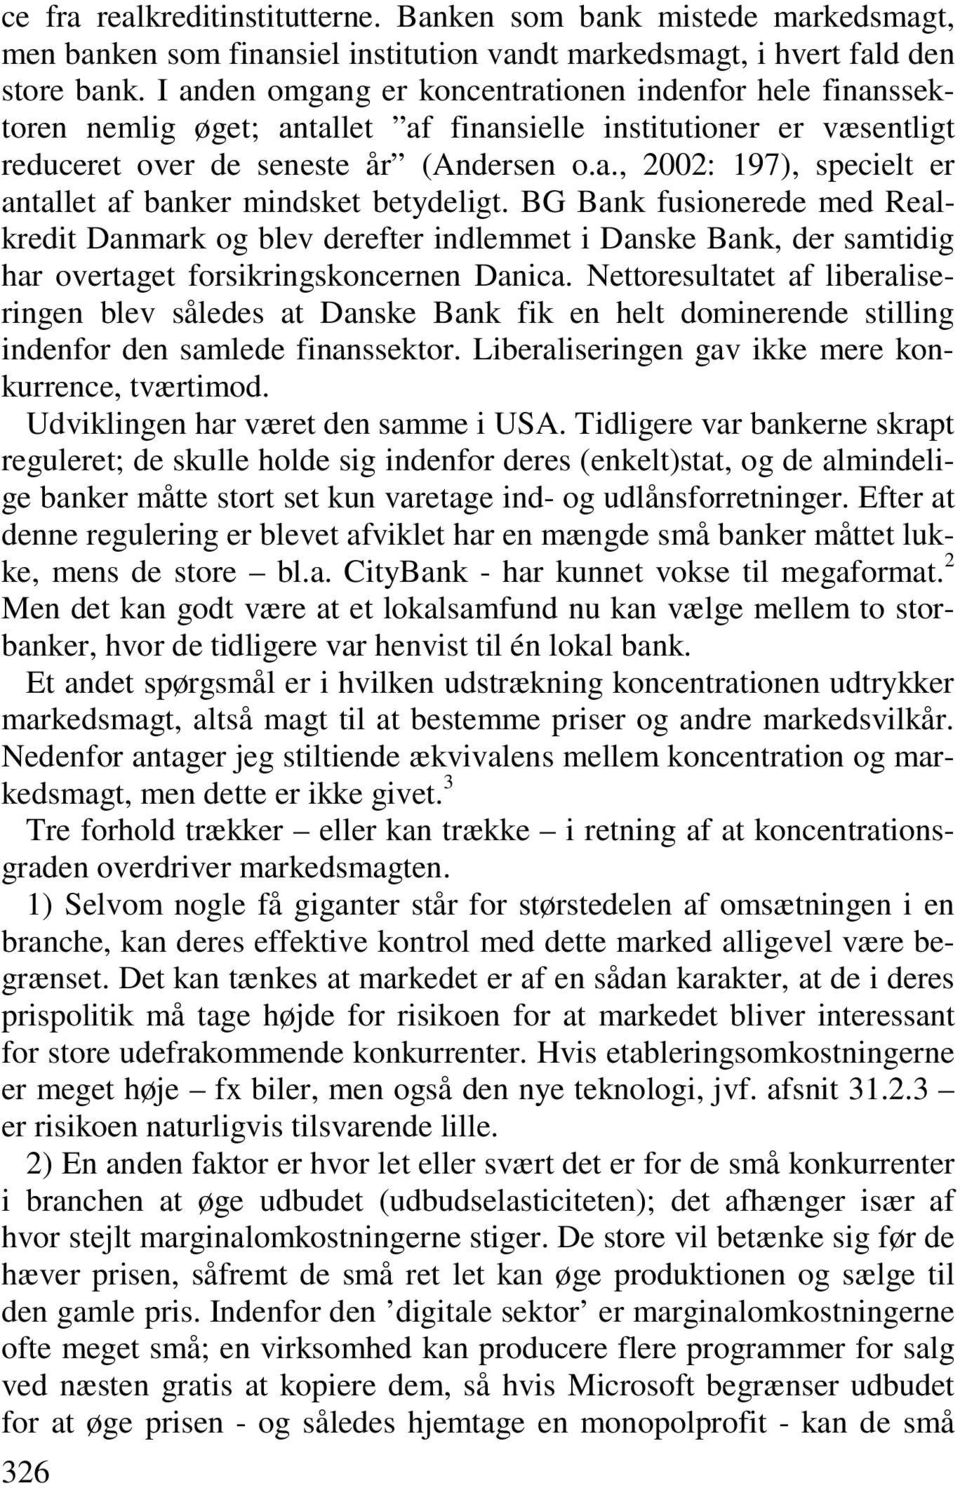 BG Bank fusionerede med Realkredit Danmark og blev derefter indlemmet i Danske Bank, der samtidig har overtaget forsikringskoncernen Danica.